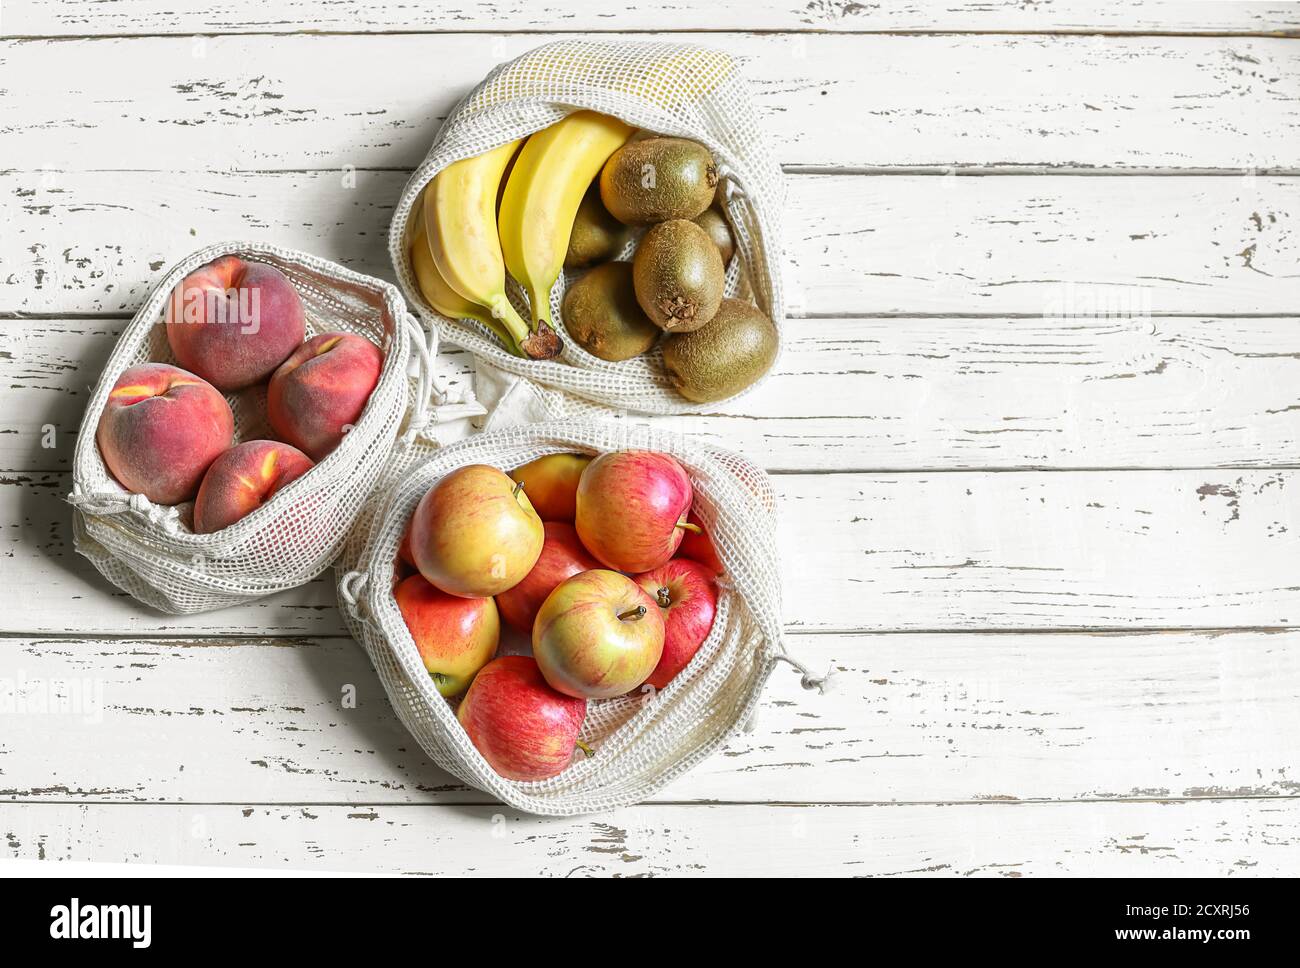 Manzanas, melocotón, kiwi, plátanos en bolsas de tela de malla ecológicas reutilizables sobre el fondo blanco de madera. Concepto de cero residuos y estilo de vida libre de plástico. Foto de stock